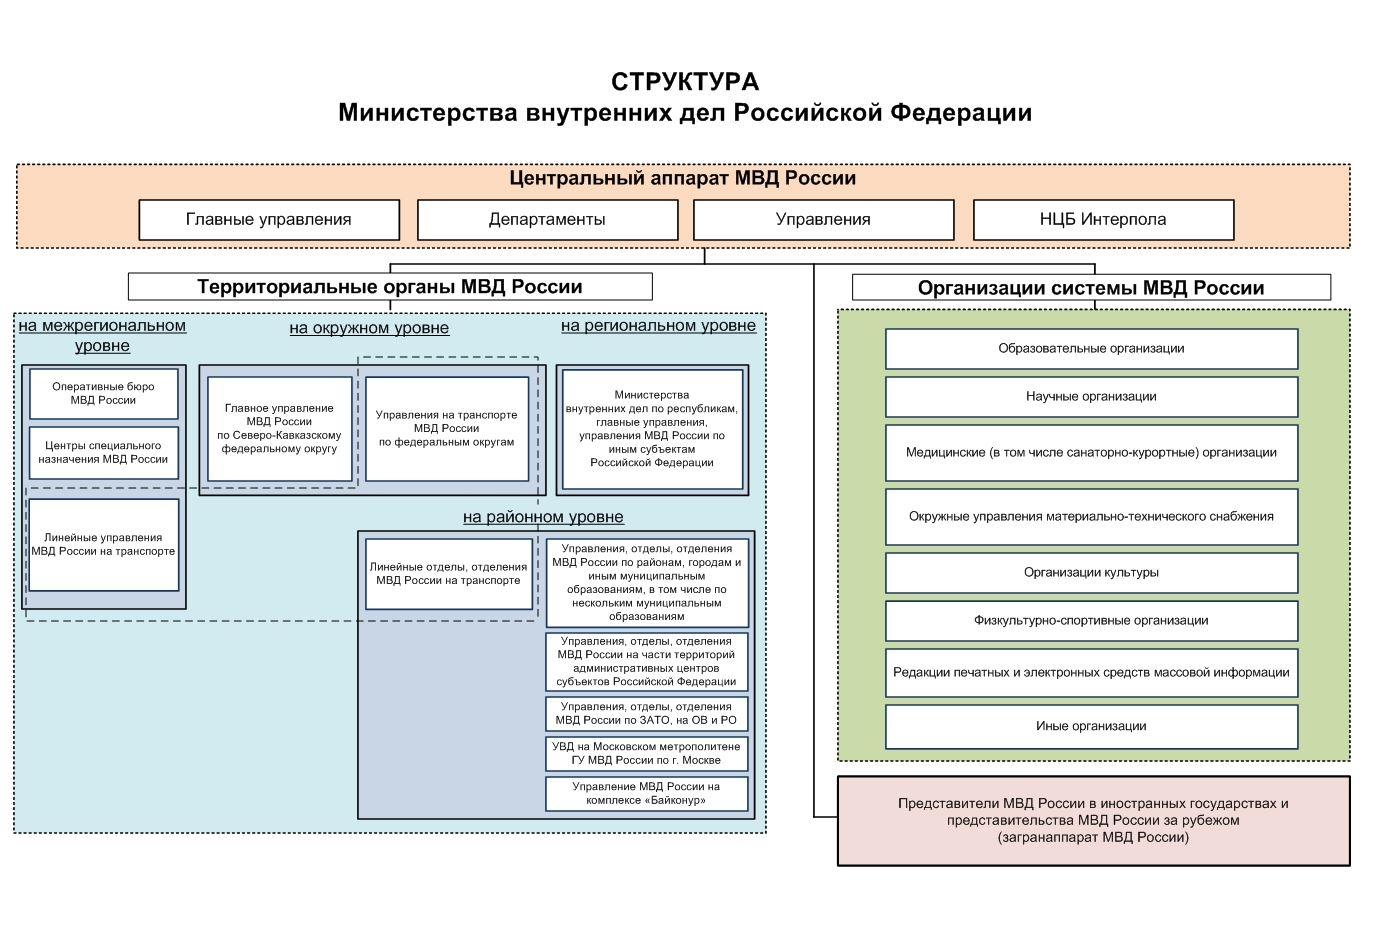 Система и структура МВД России